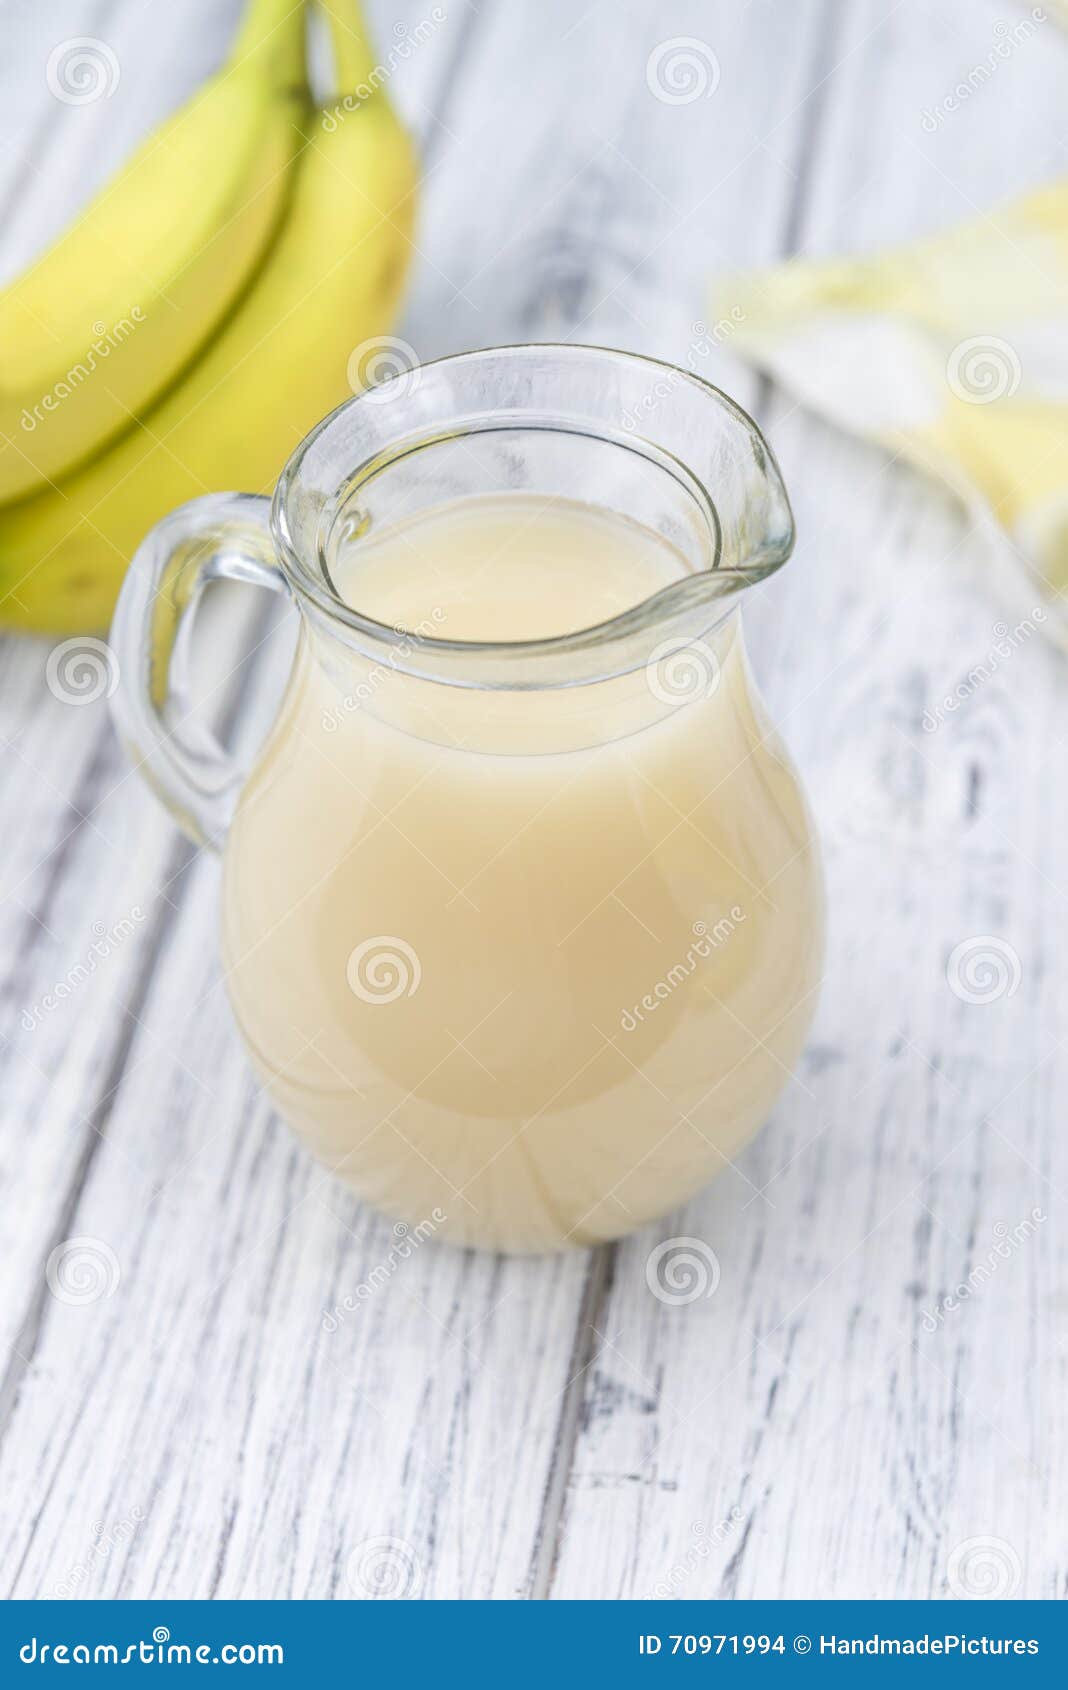 香蕉奶昔的做法_【图解】香蕉奶昔怎么做如何做好吃_香蕉奶昔家常做法大全_Anastsia喵_豆果美食